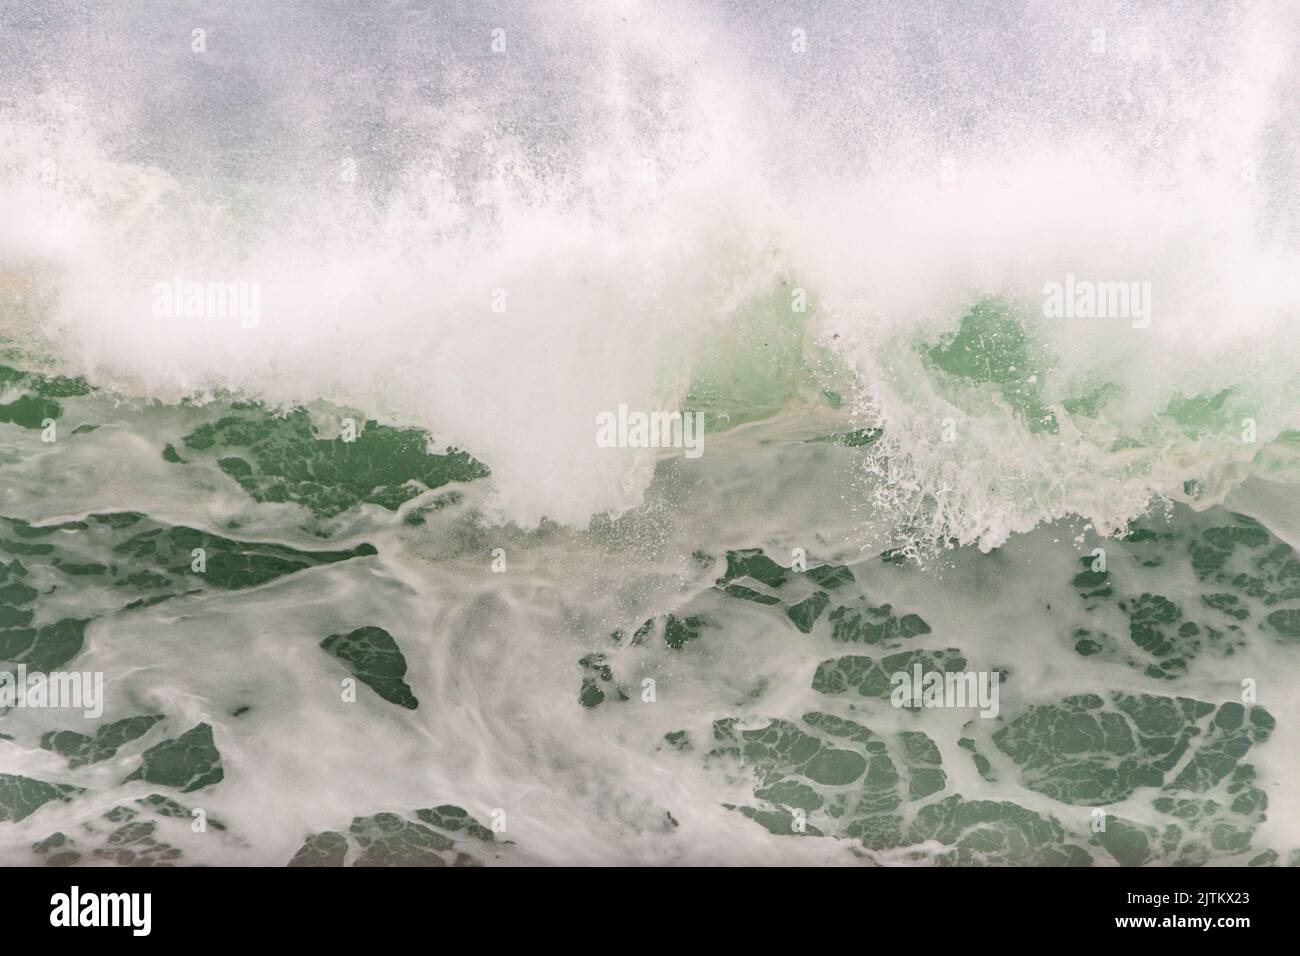 Weißer Schaum einer Welle am leblon Strand in Rio de Janeiro Brasilien. Stockfoto